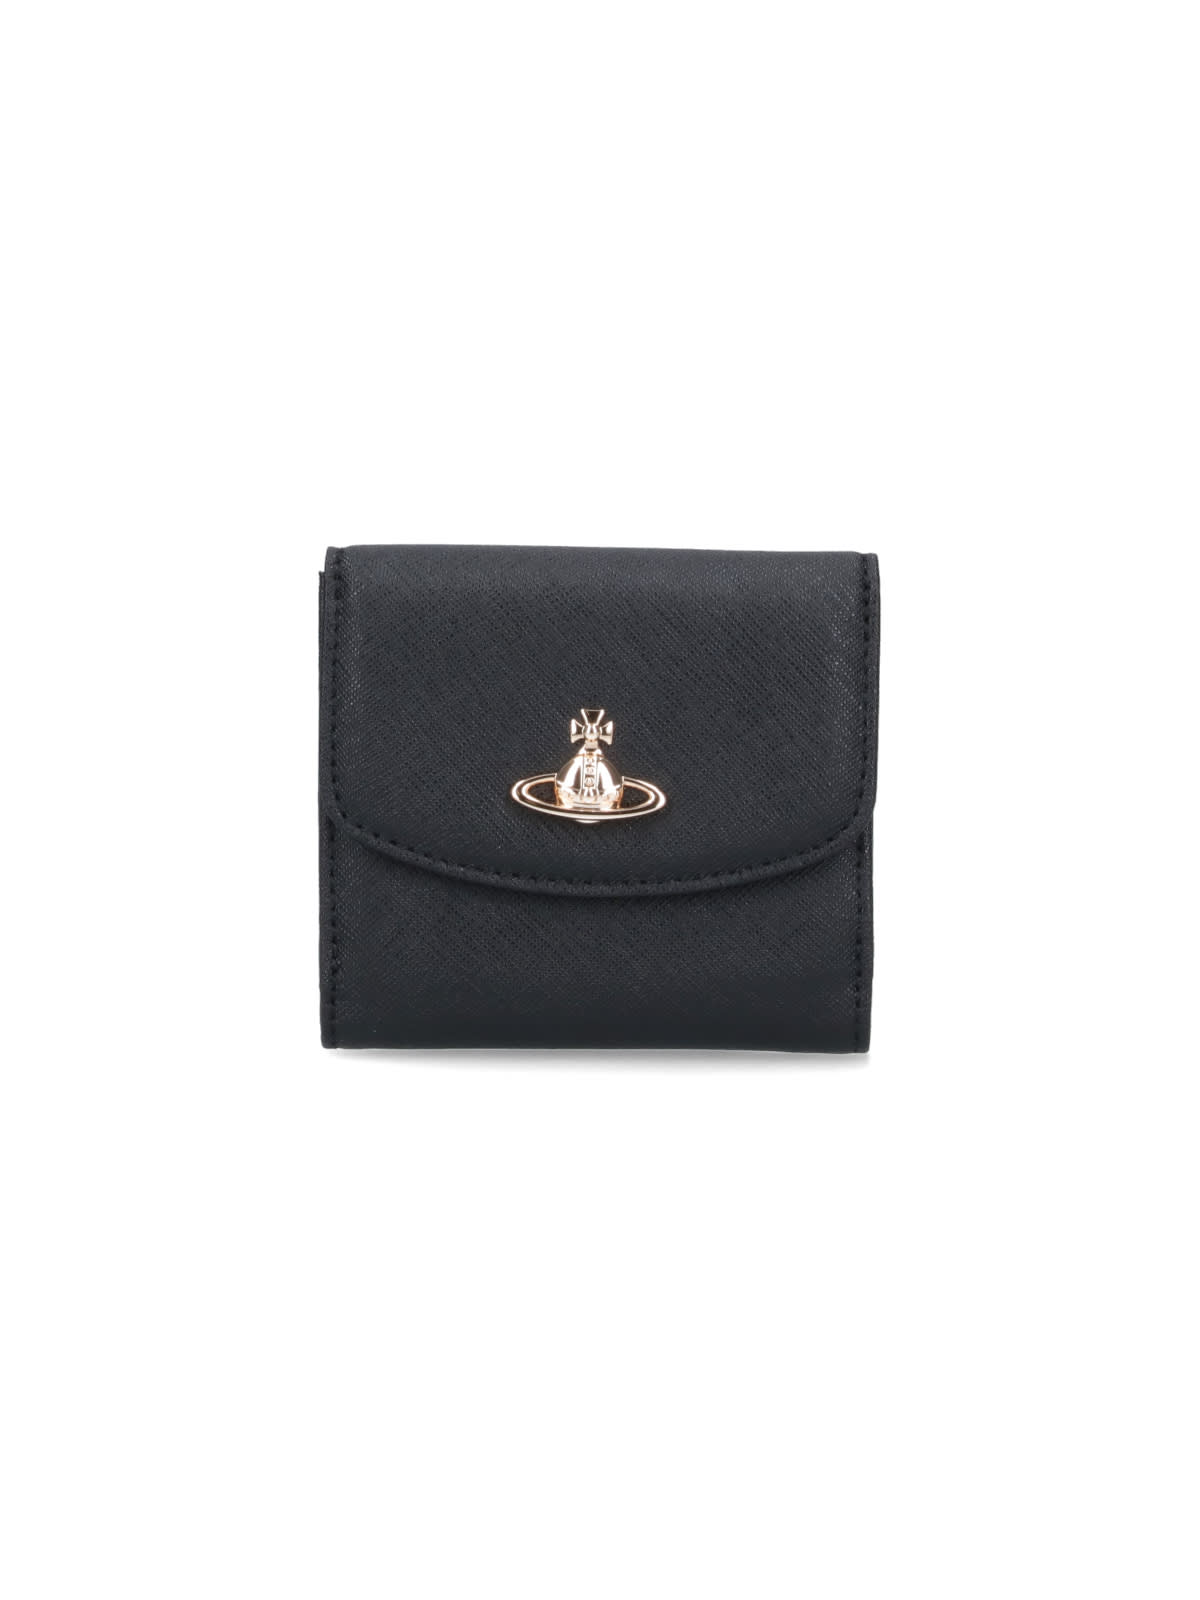 Vivienne Westwood orb Wallet